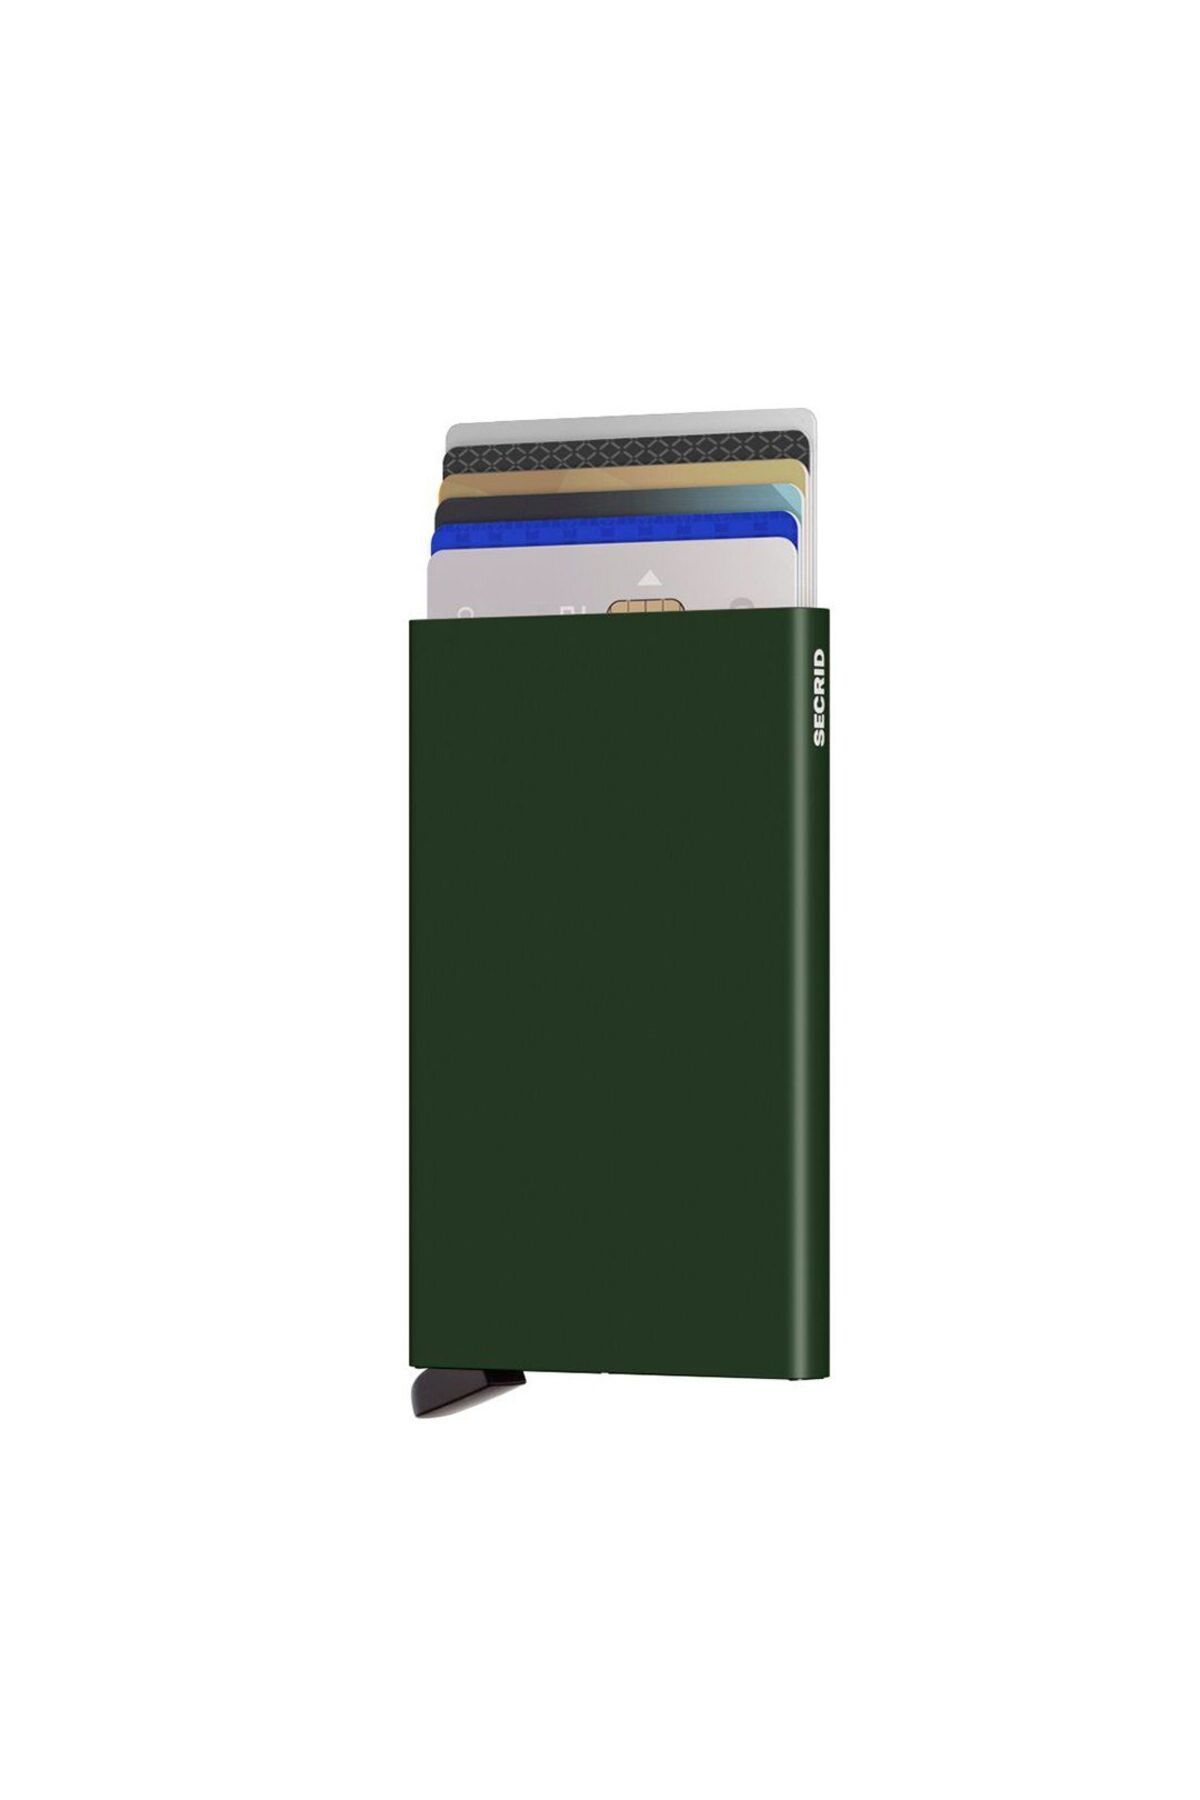 Secrid Card Protector Green - Yeşil %100 Orjinal Özel Cardprotector Alüminyum Kartlık